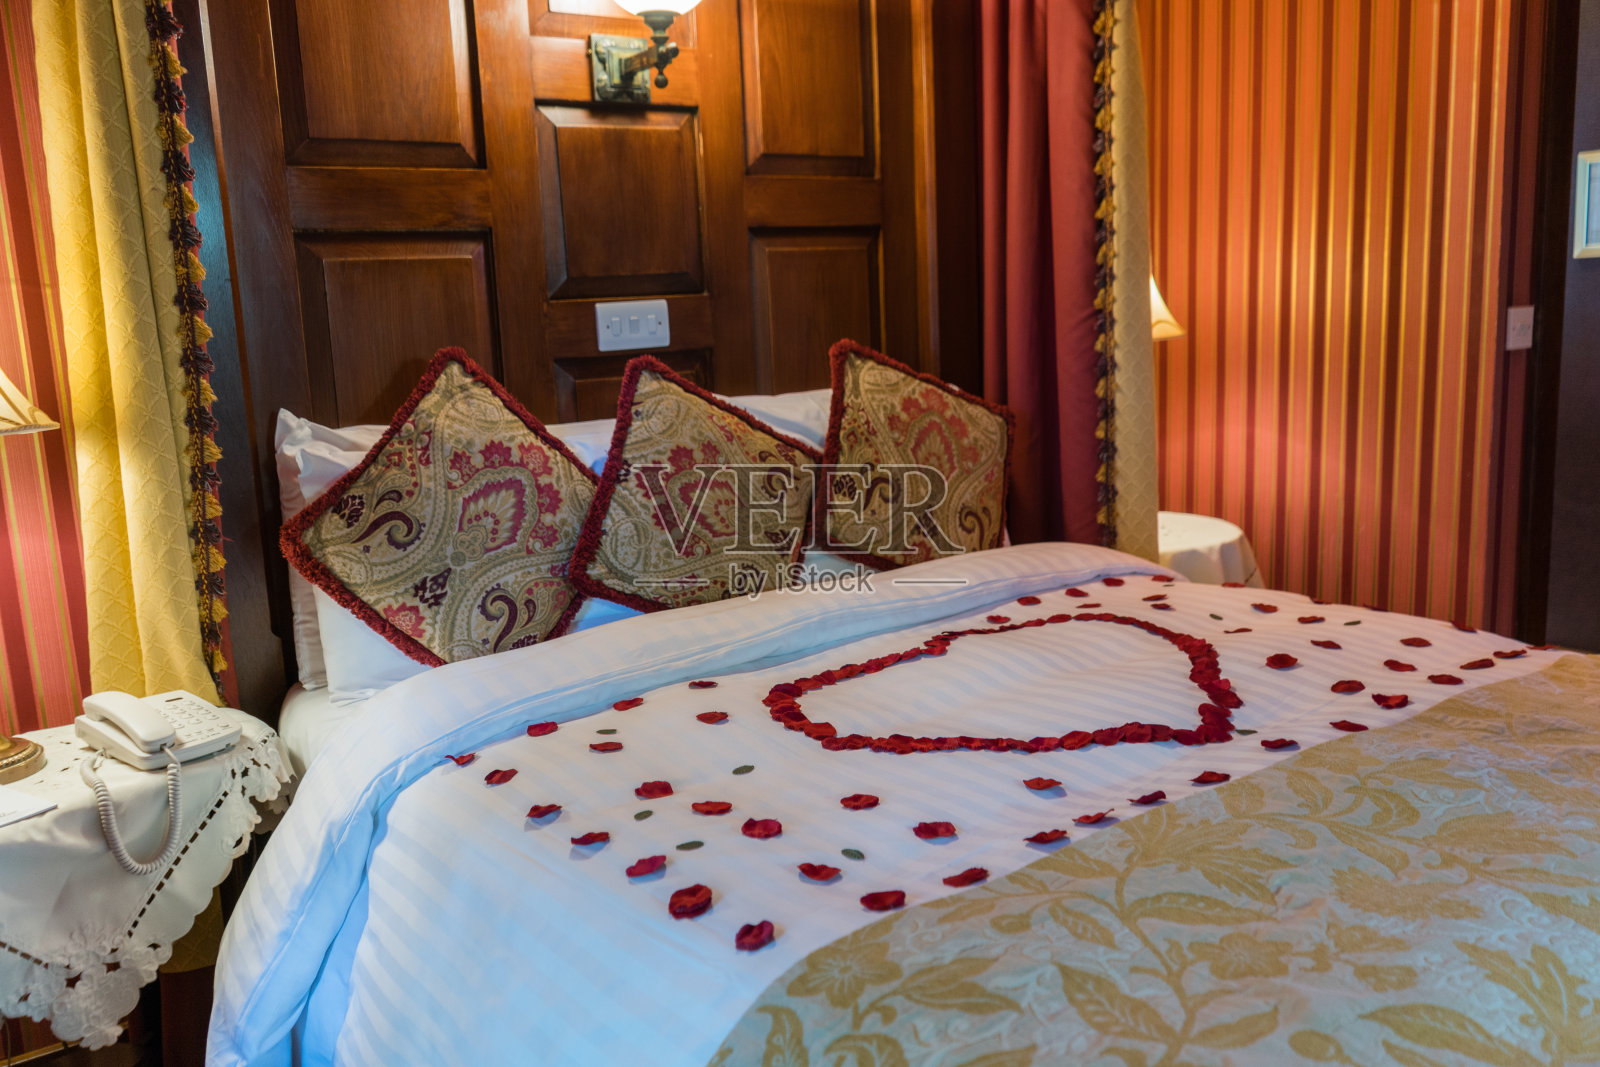 浪漫的酒店房间，床上有玫瑰花瓣，四柱床适合婚礼或情人节照片摄影图片